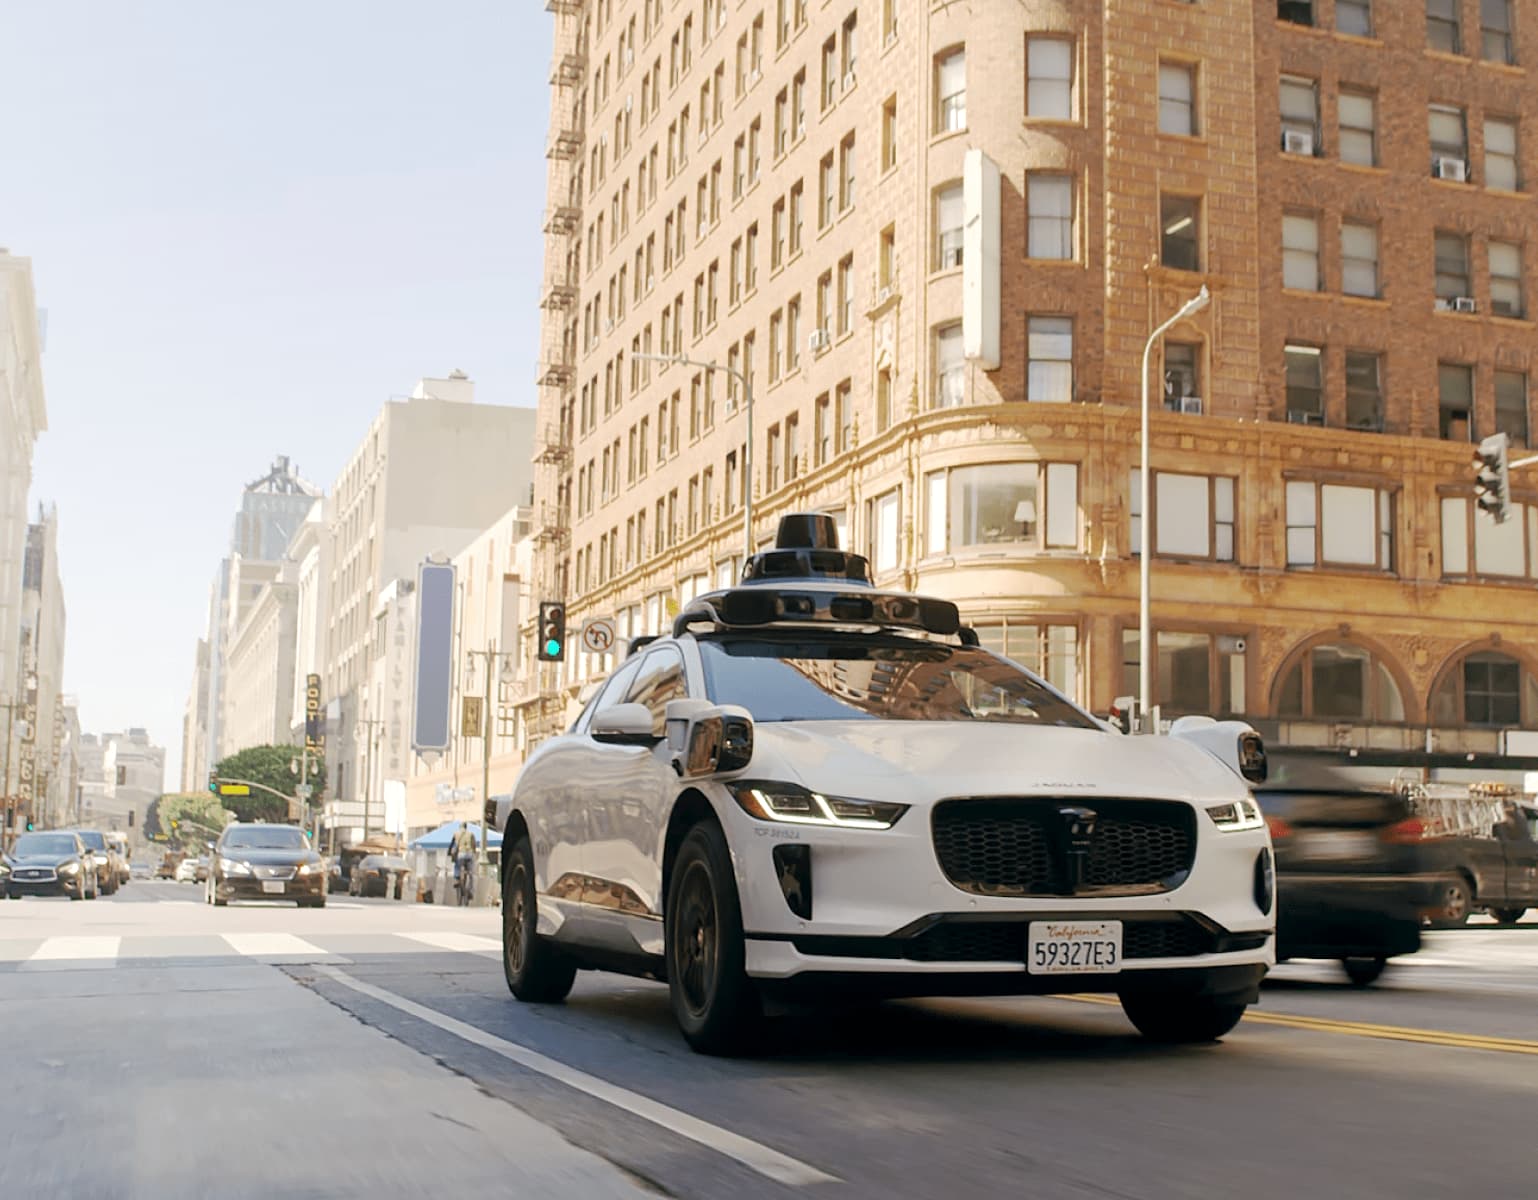 Taksówka-robot Waymo startuje w Los Angeles